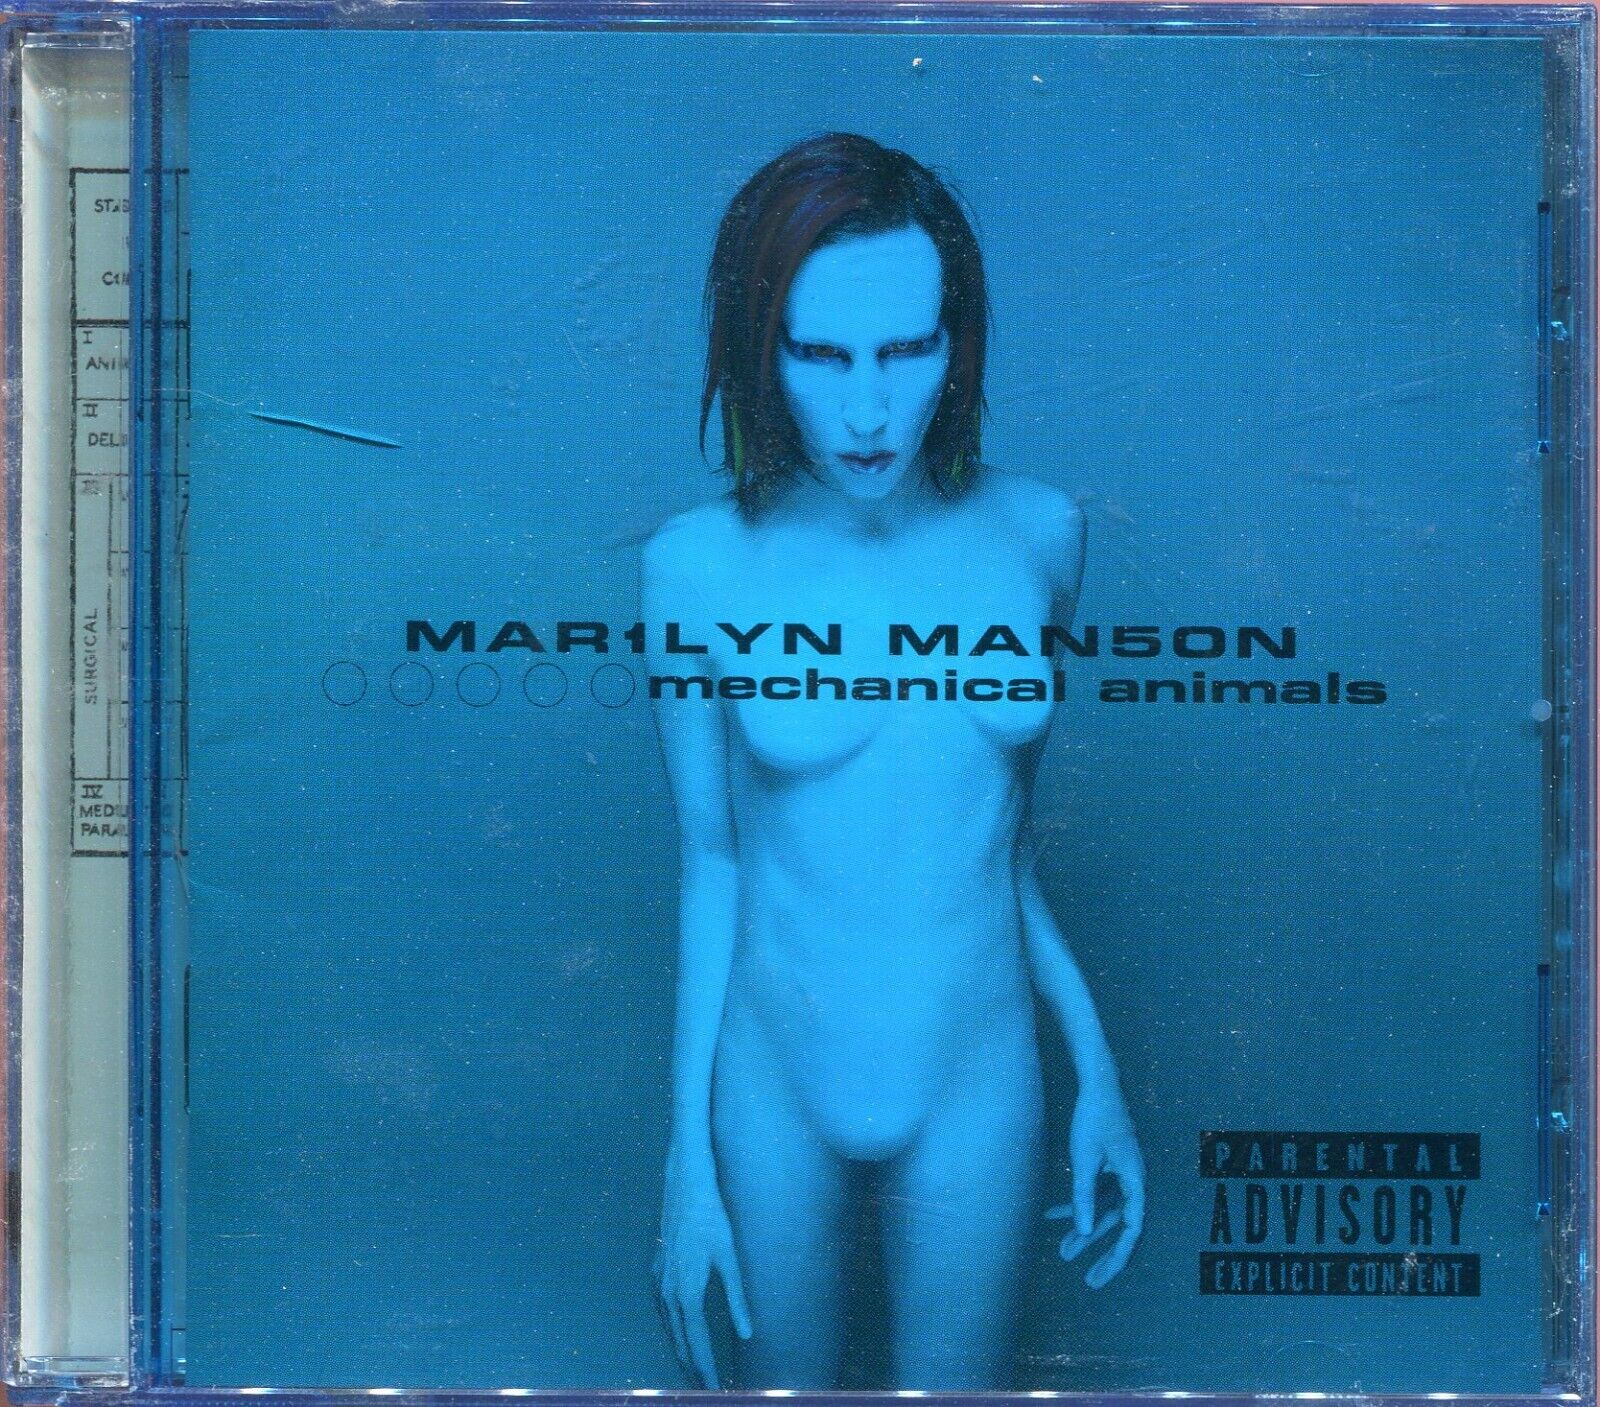 Marilyn Manson - Mar1lyn Man5on / Mechanical Animals (Music CD, PA)